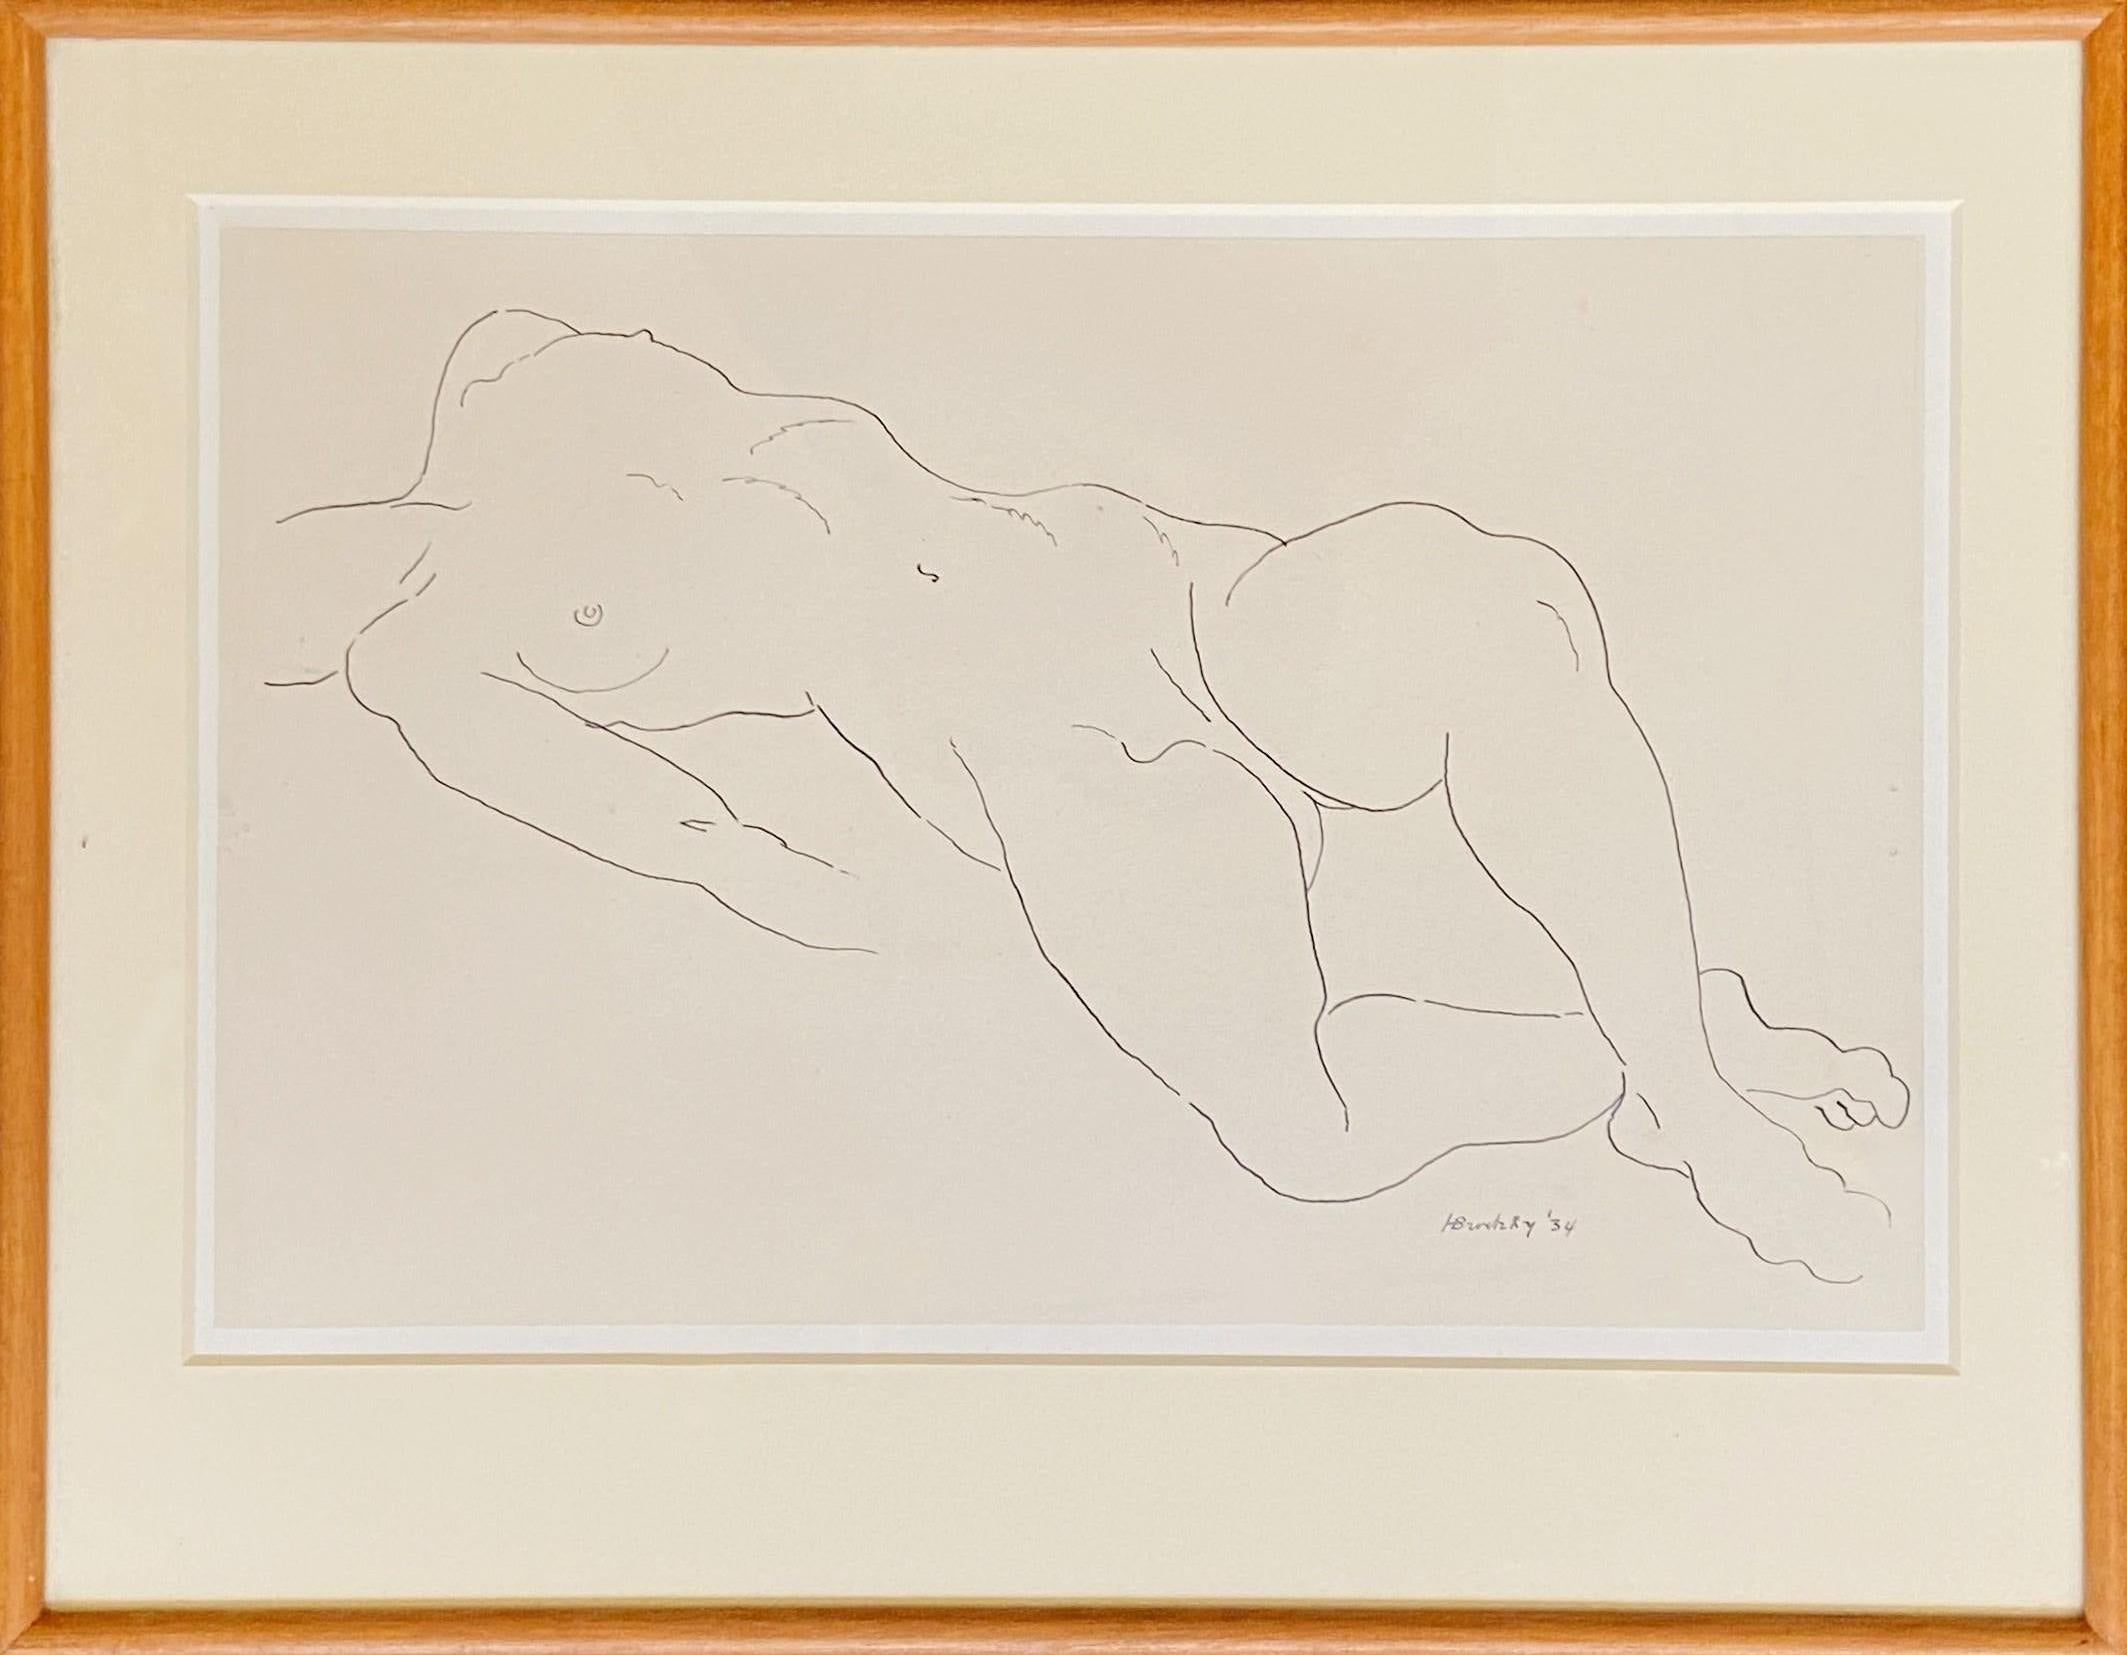 Essence of Line, étude nue à l'encre, dessin du début du 20e siècle, signé et daté - Art de Horace Brodsky